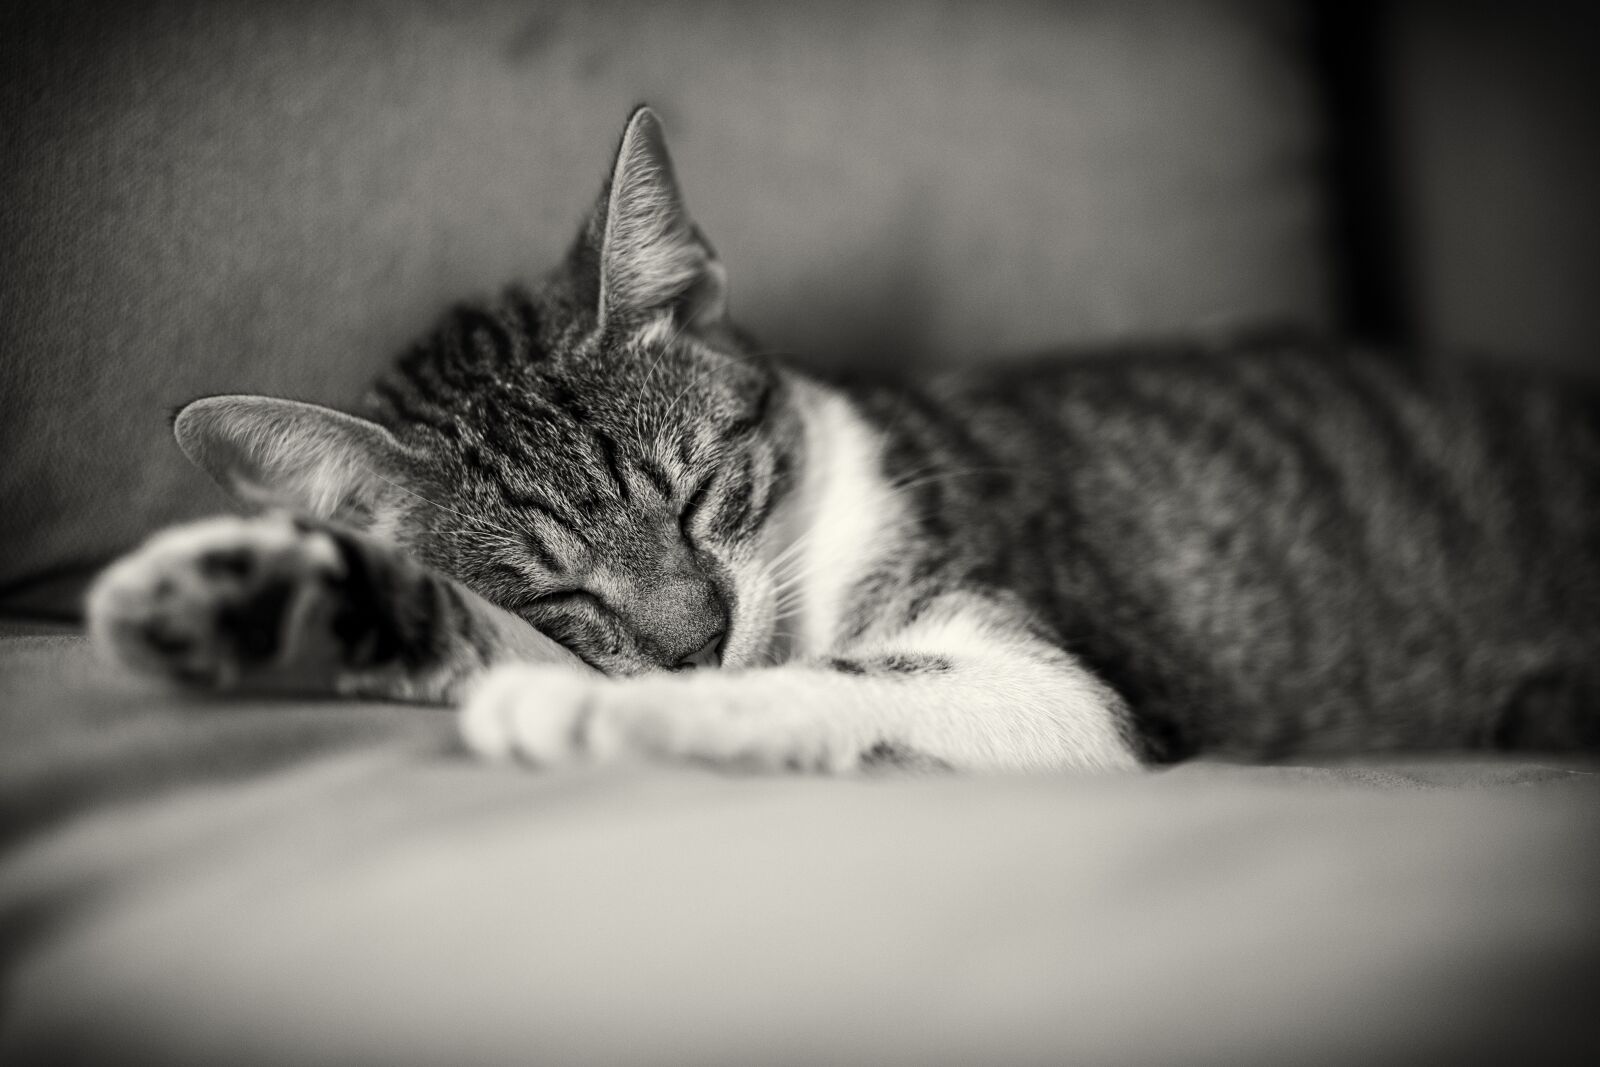 Canon EOS 6D sample photo. Cat, sleeping, kitten photography